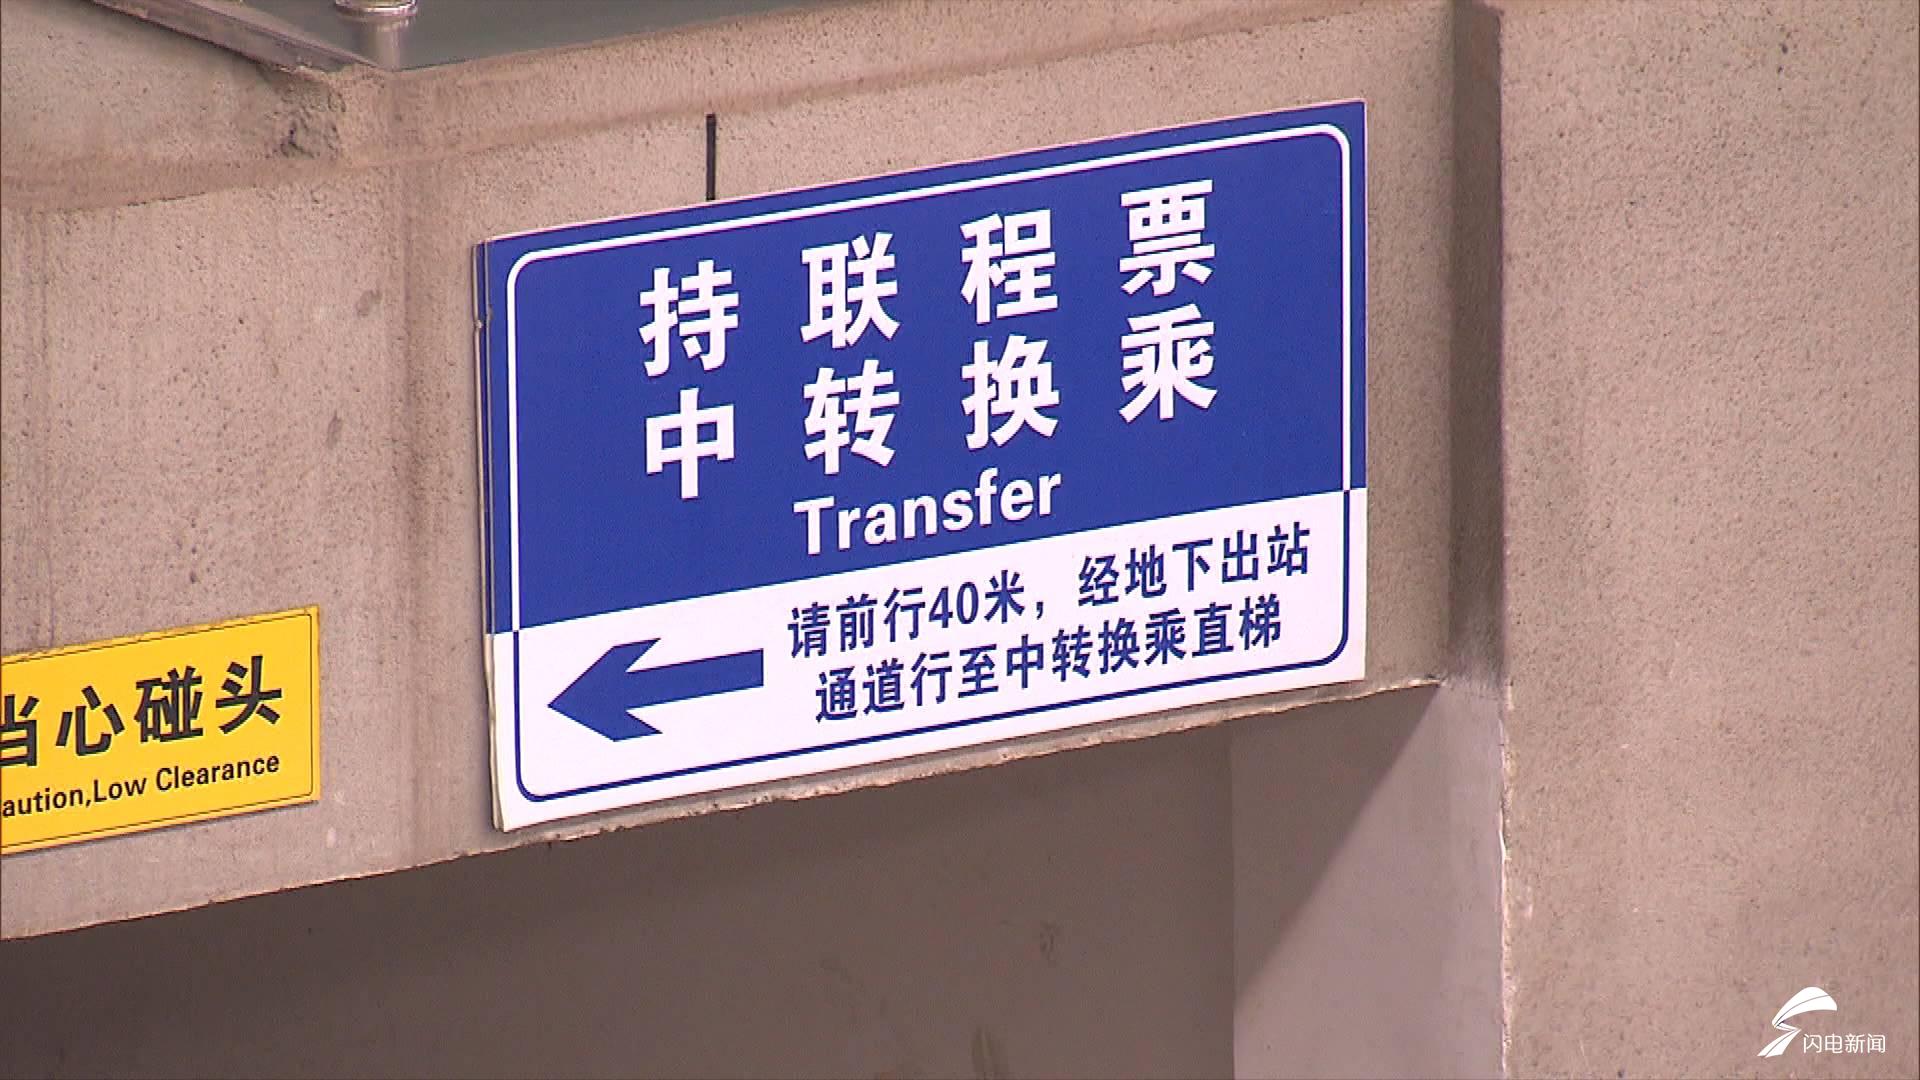 24秒丨济南火车站中转换乘不必出站坐直梯可直接到候车室